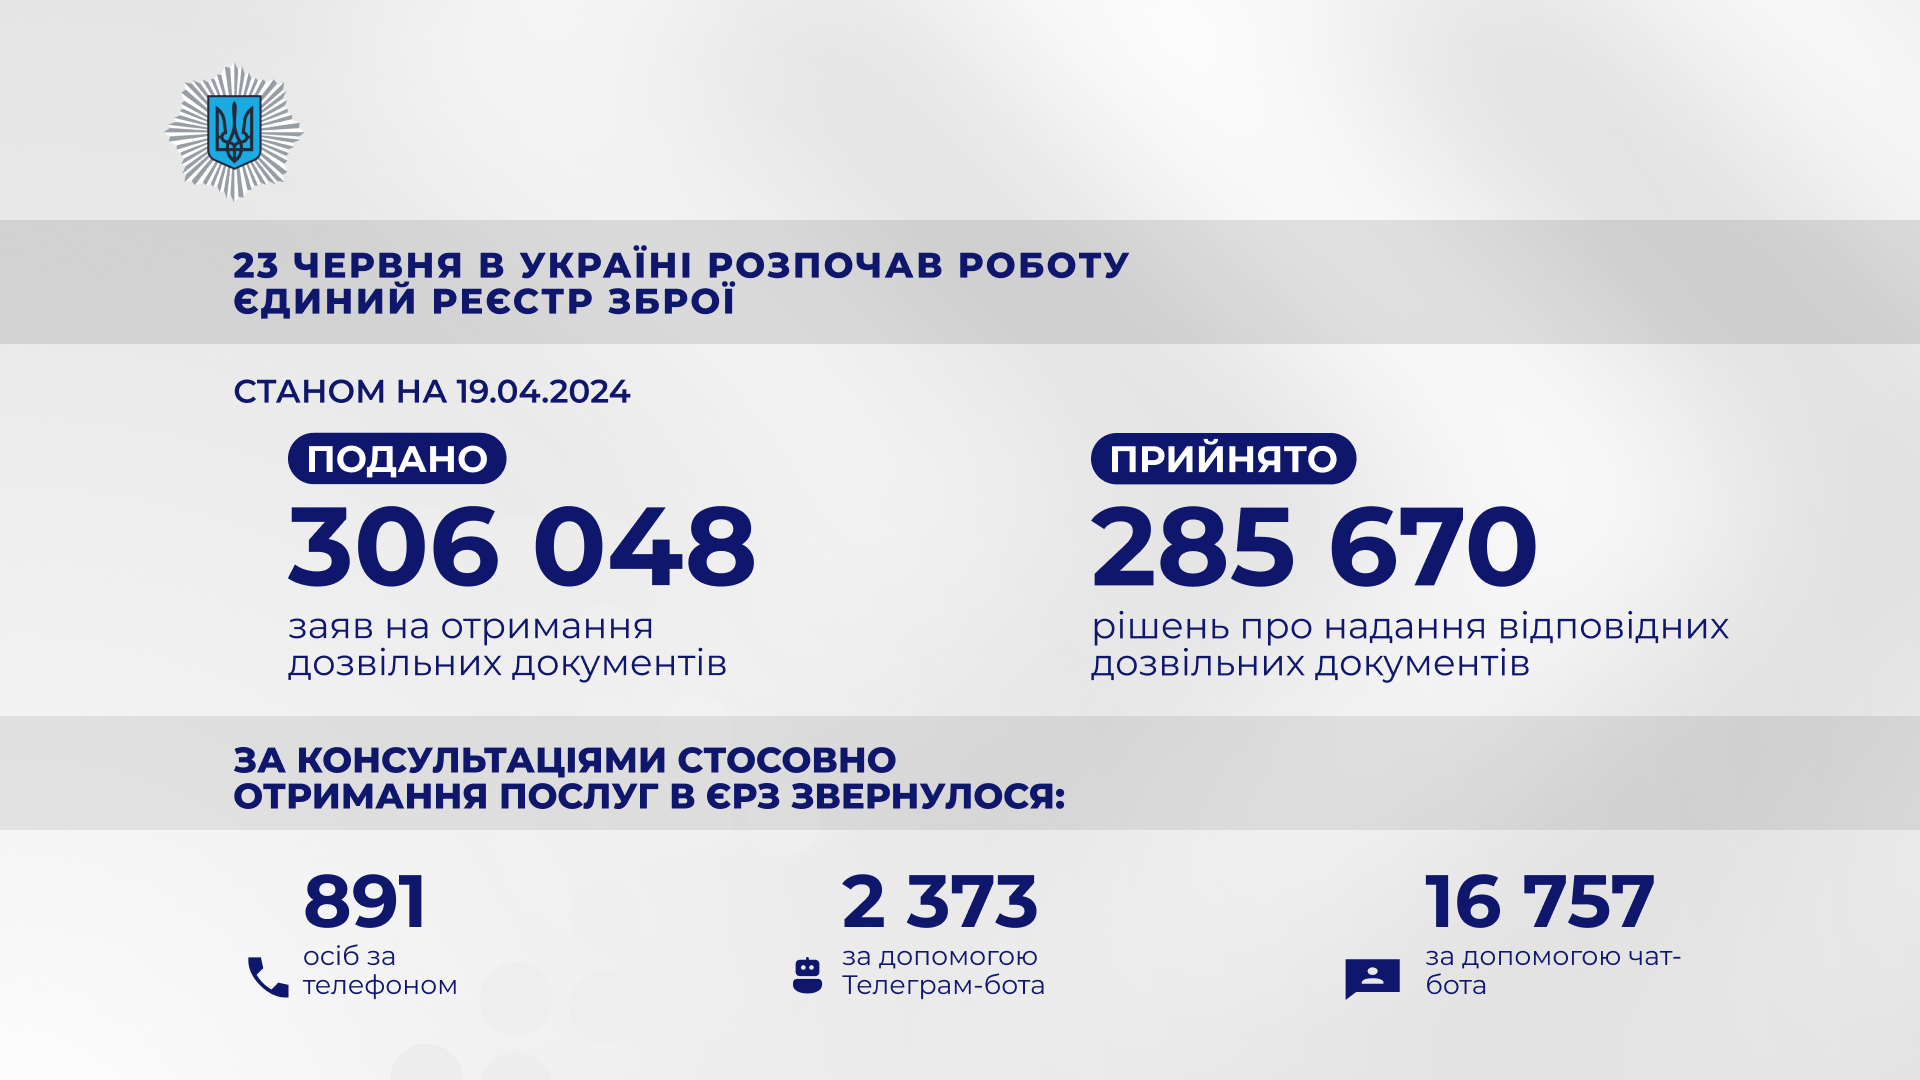 Українці подали через Єдиний реєстр зброї вже понад 306 тисяч заяв на отримання різних видів дозвільних документів.